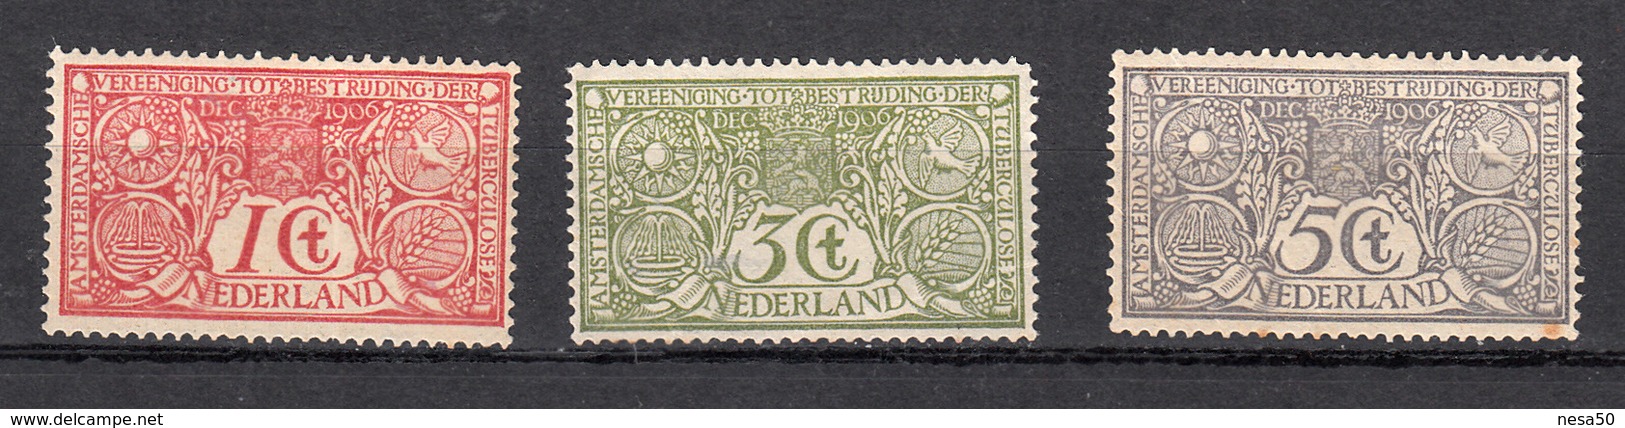 Nederland 1906 Nvph Nr 84 - 86, Mi Nr 69 - 71, Tuberculose Zegels, Niet Geheel Postfris, Derde Zegel Achterkant Vlekje - Unused Stamps